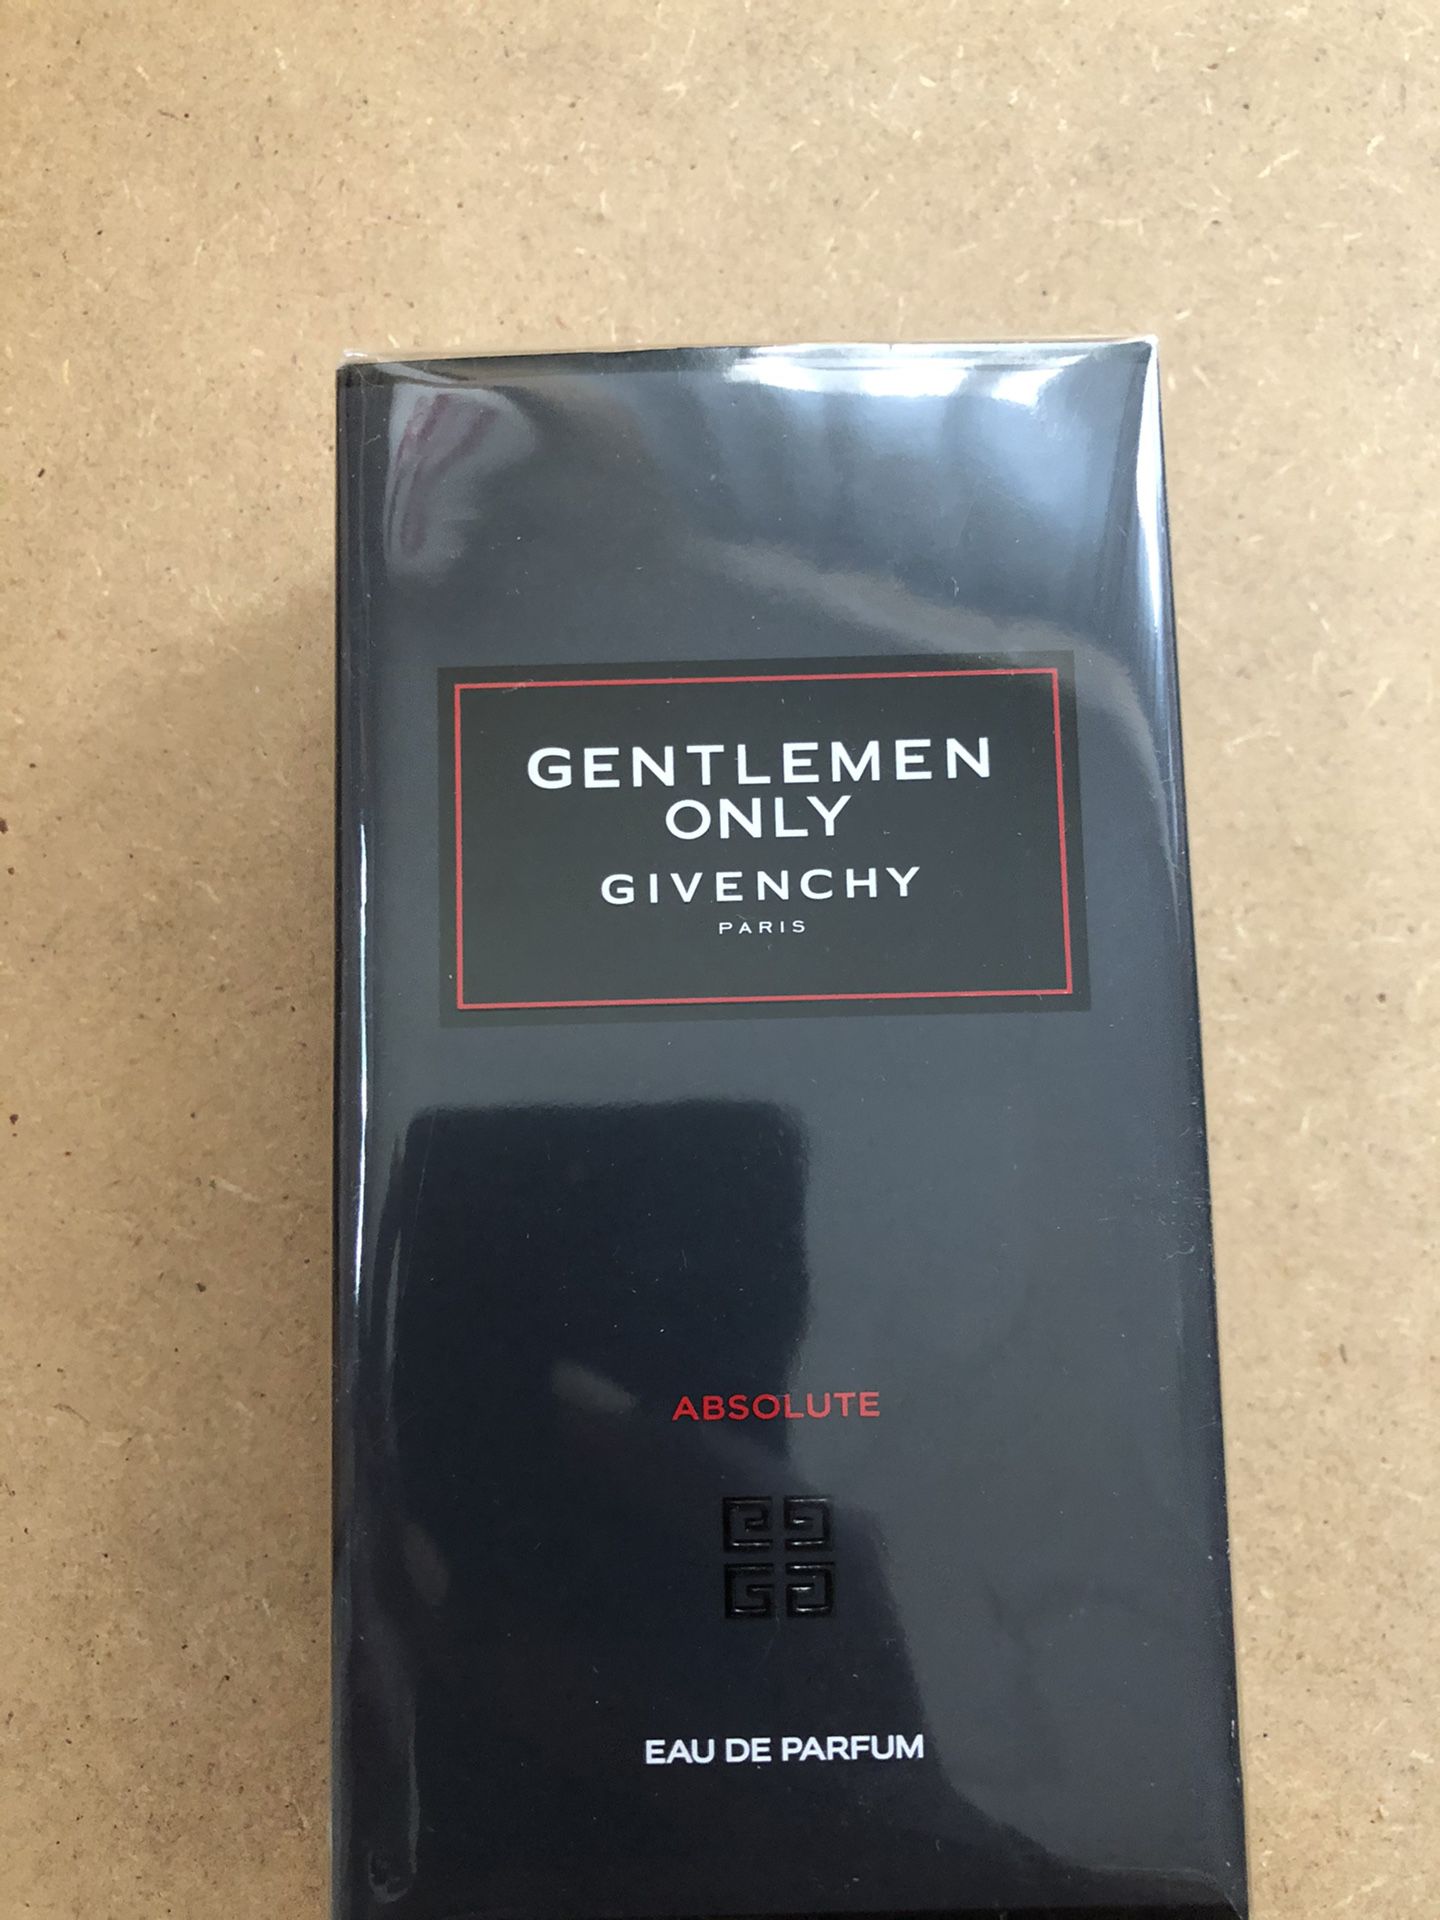 Men’s perfume